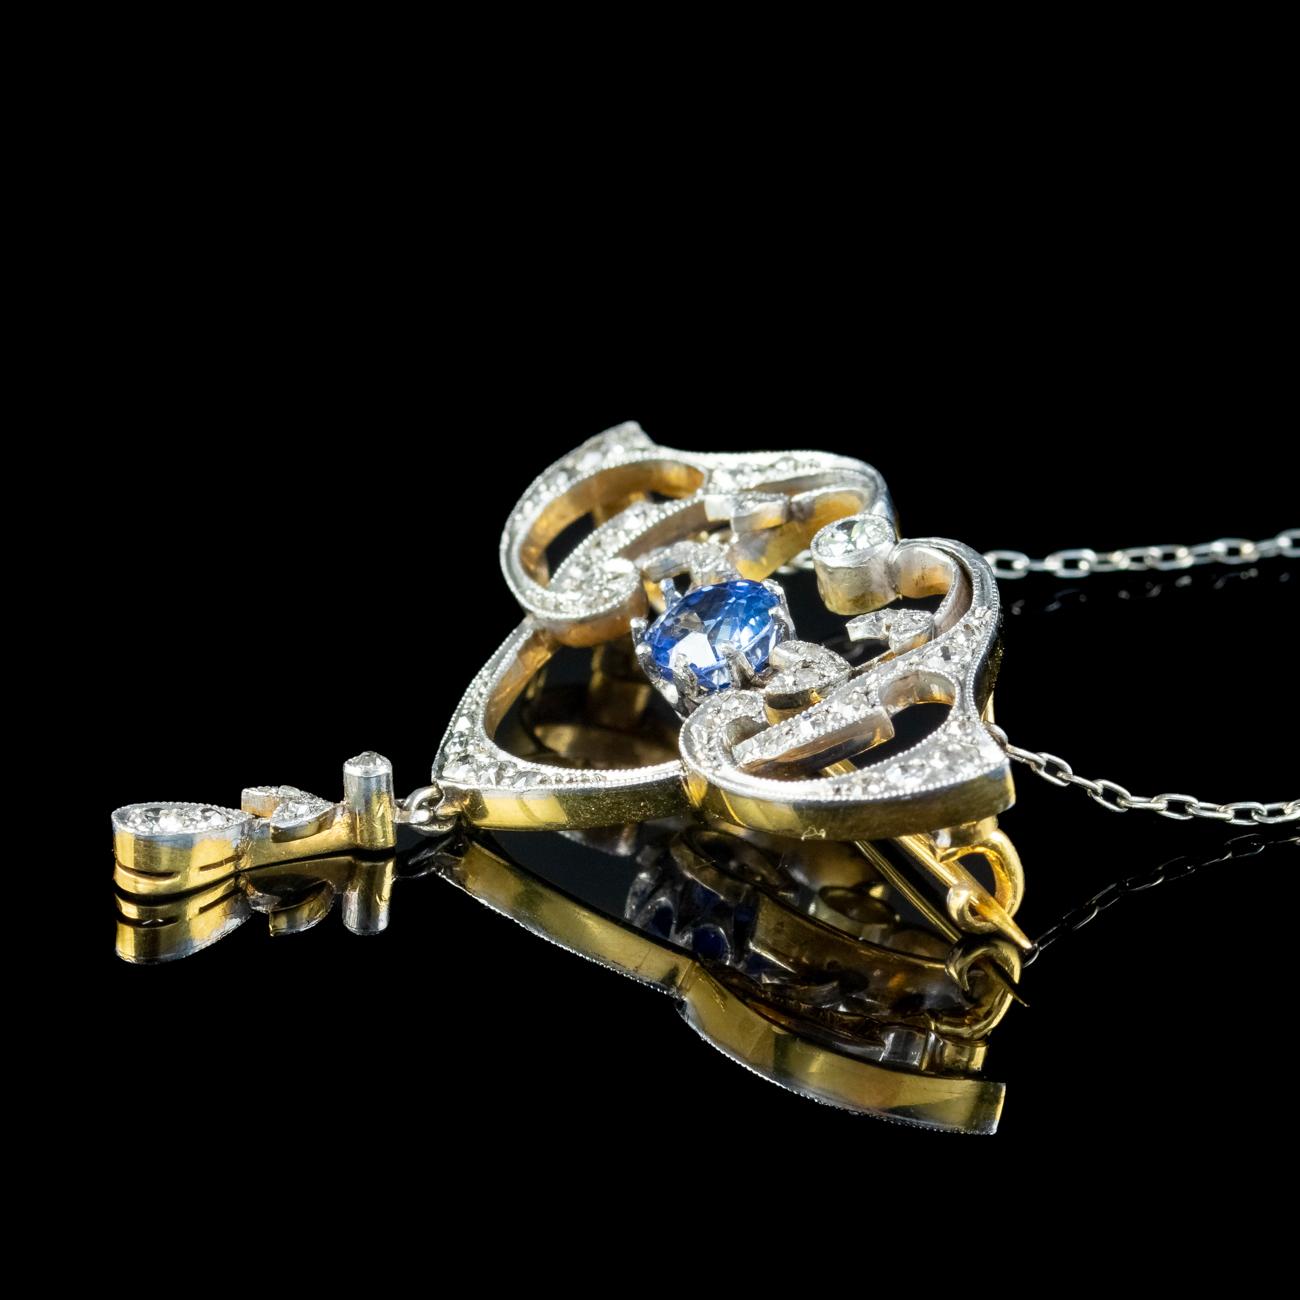 Cushion Cut Antique Edwardian Ceylon Sapphire Diamond Lavaliere Pendant Necklace With Cert For Sale